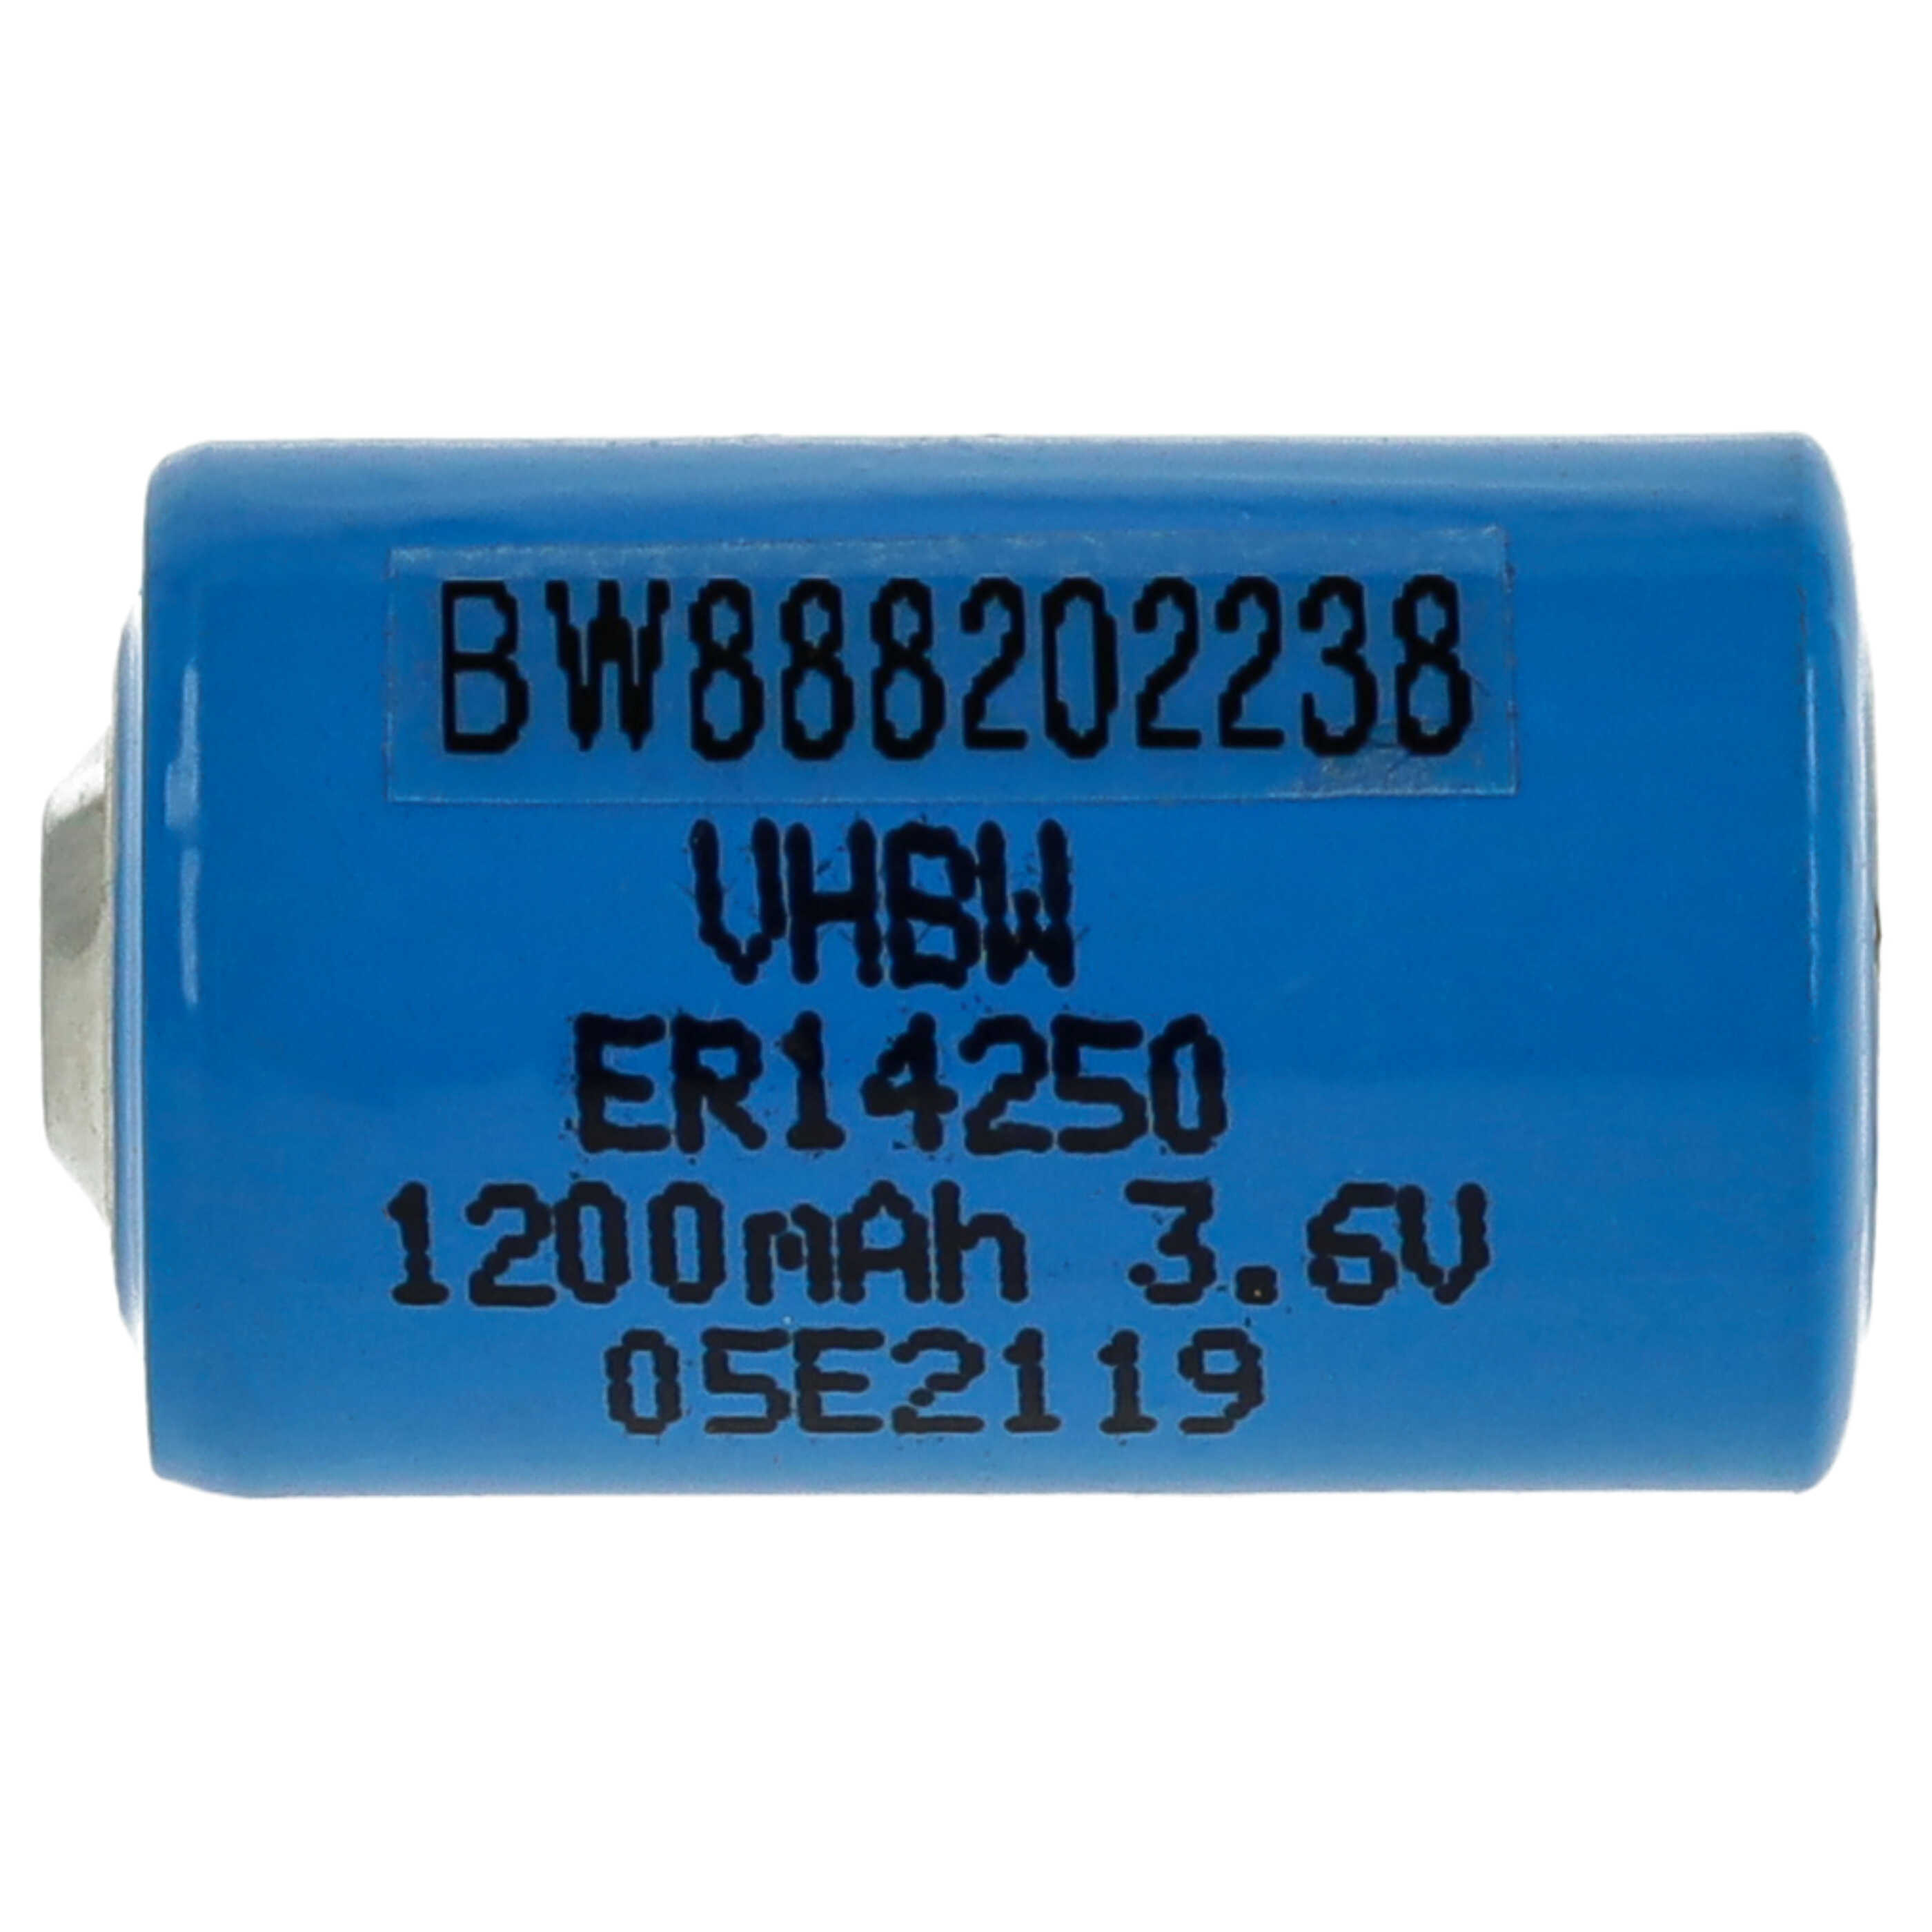 Bateria ER14250 zamiennik 1/2AA, 1770-XZ, 3B26, 418-0076, 60-0576-100 - 1200 mAh 3,6 V Li-SOCl2